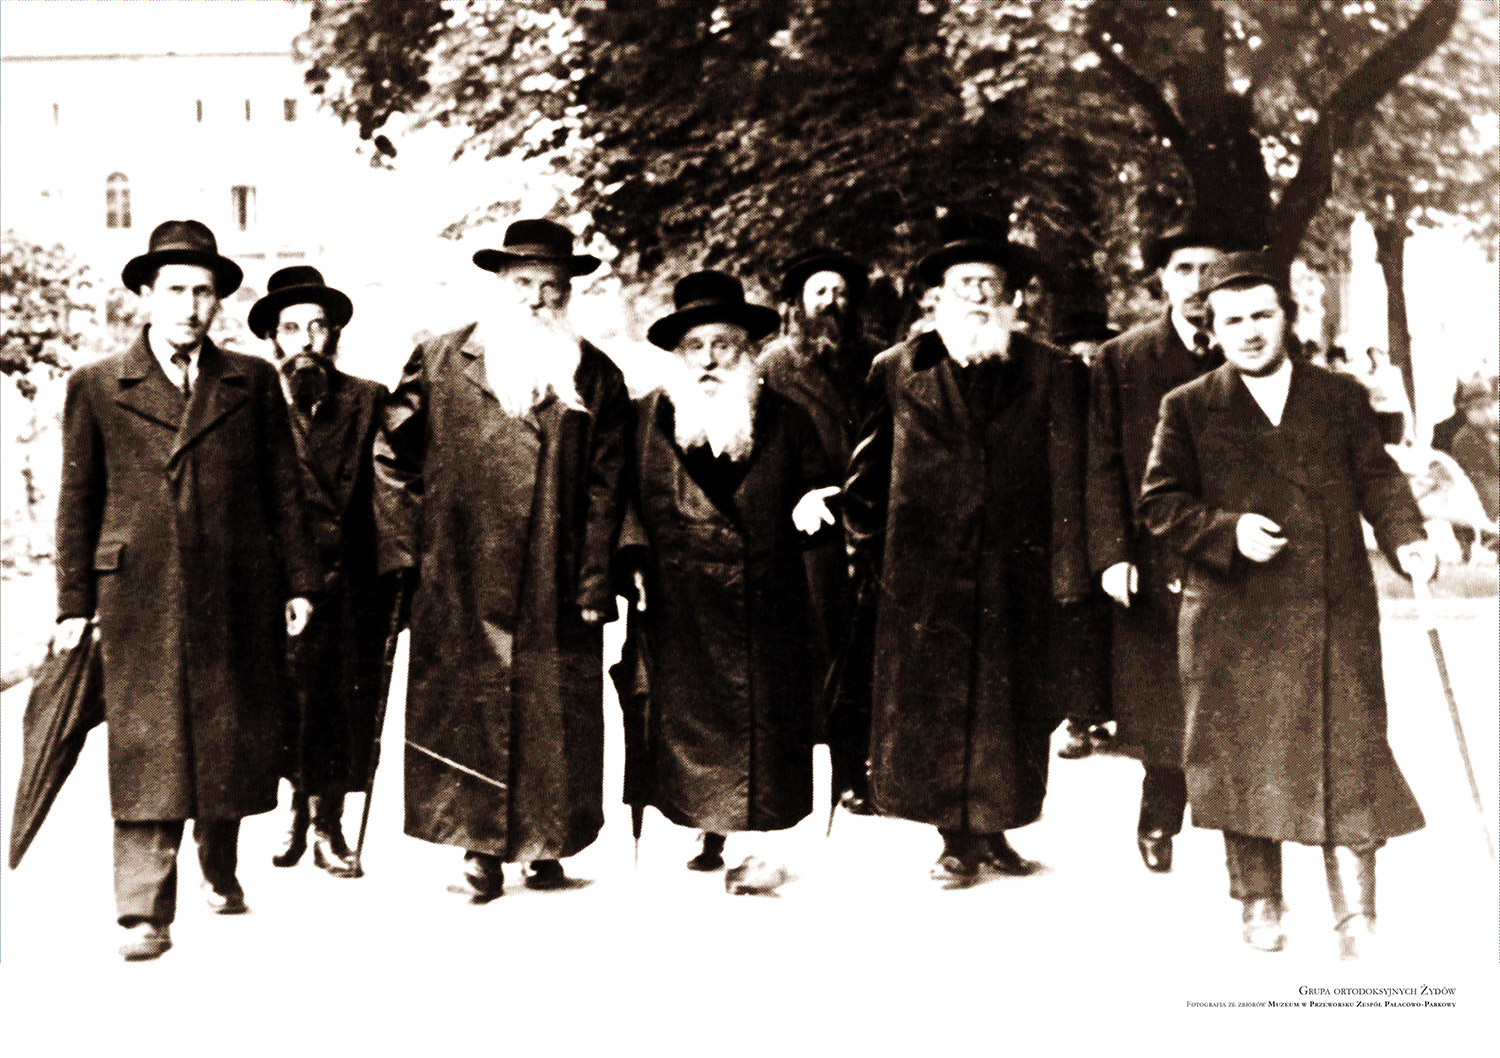 Grupa ortodoksyjnych Żydów